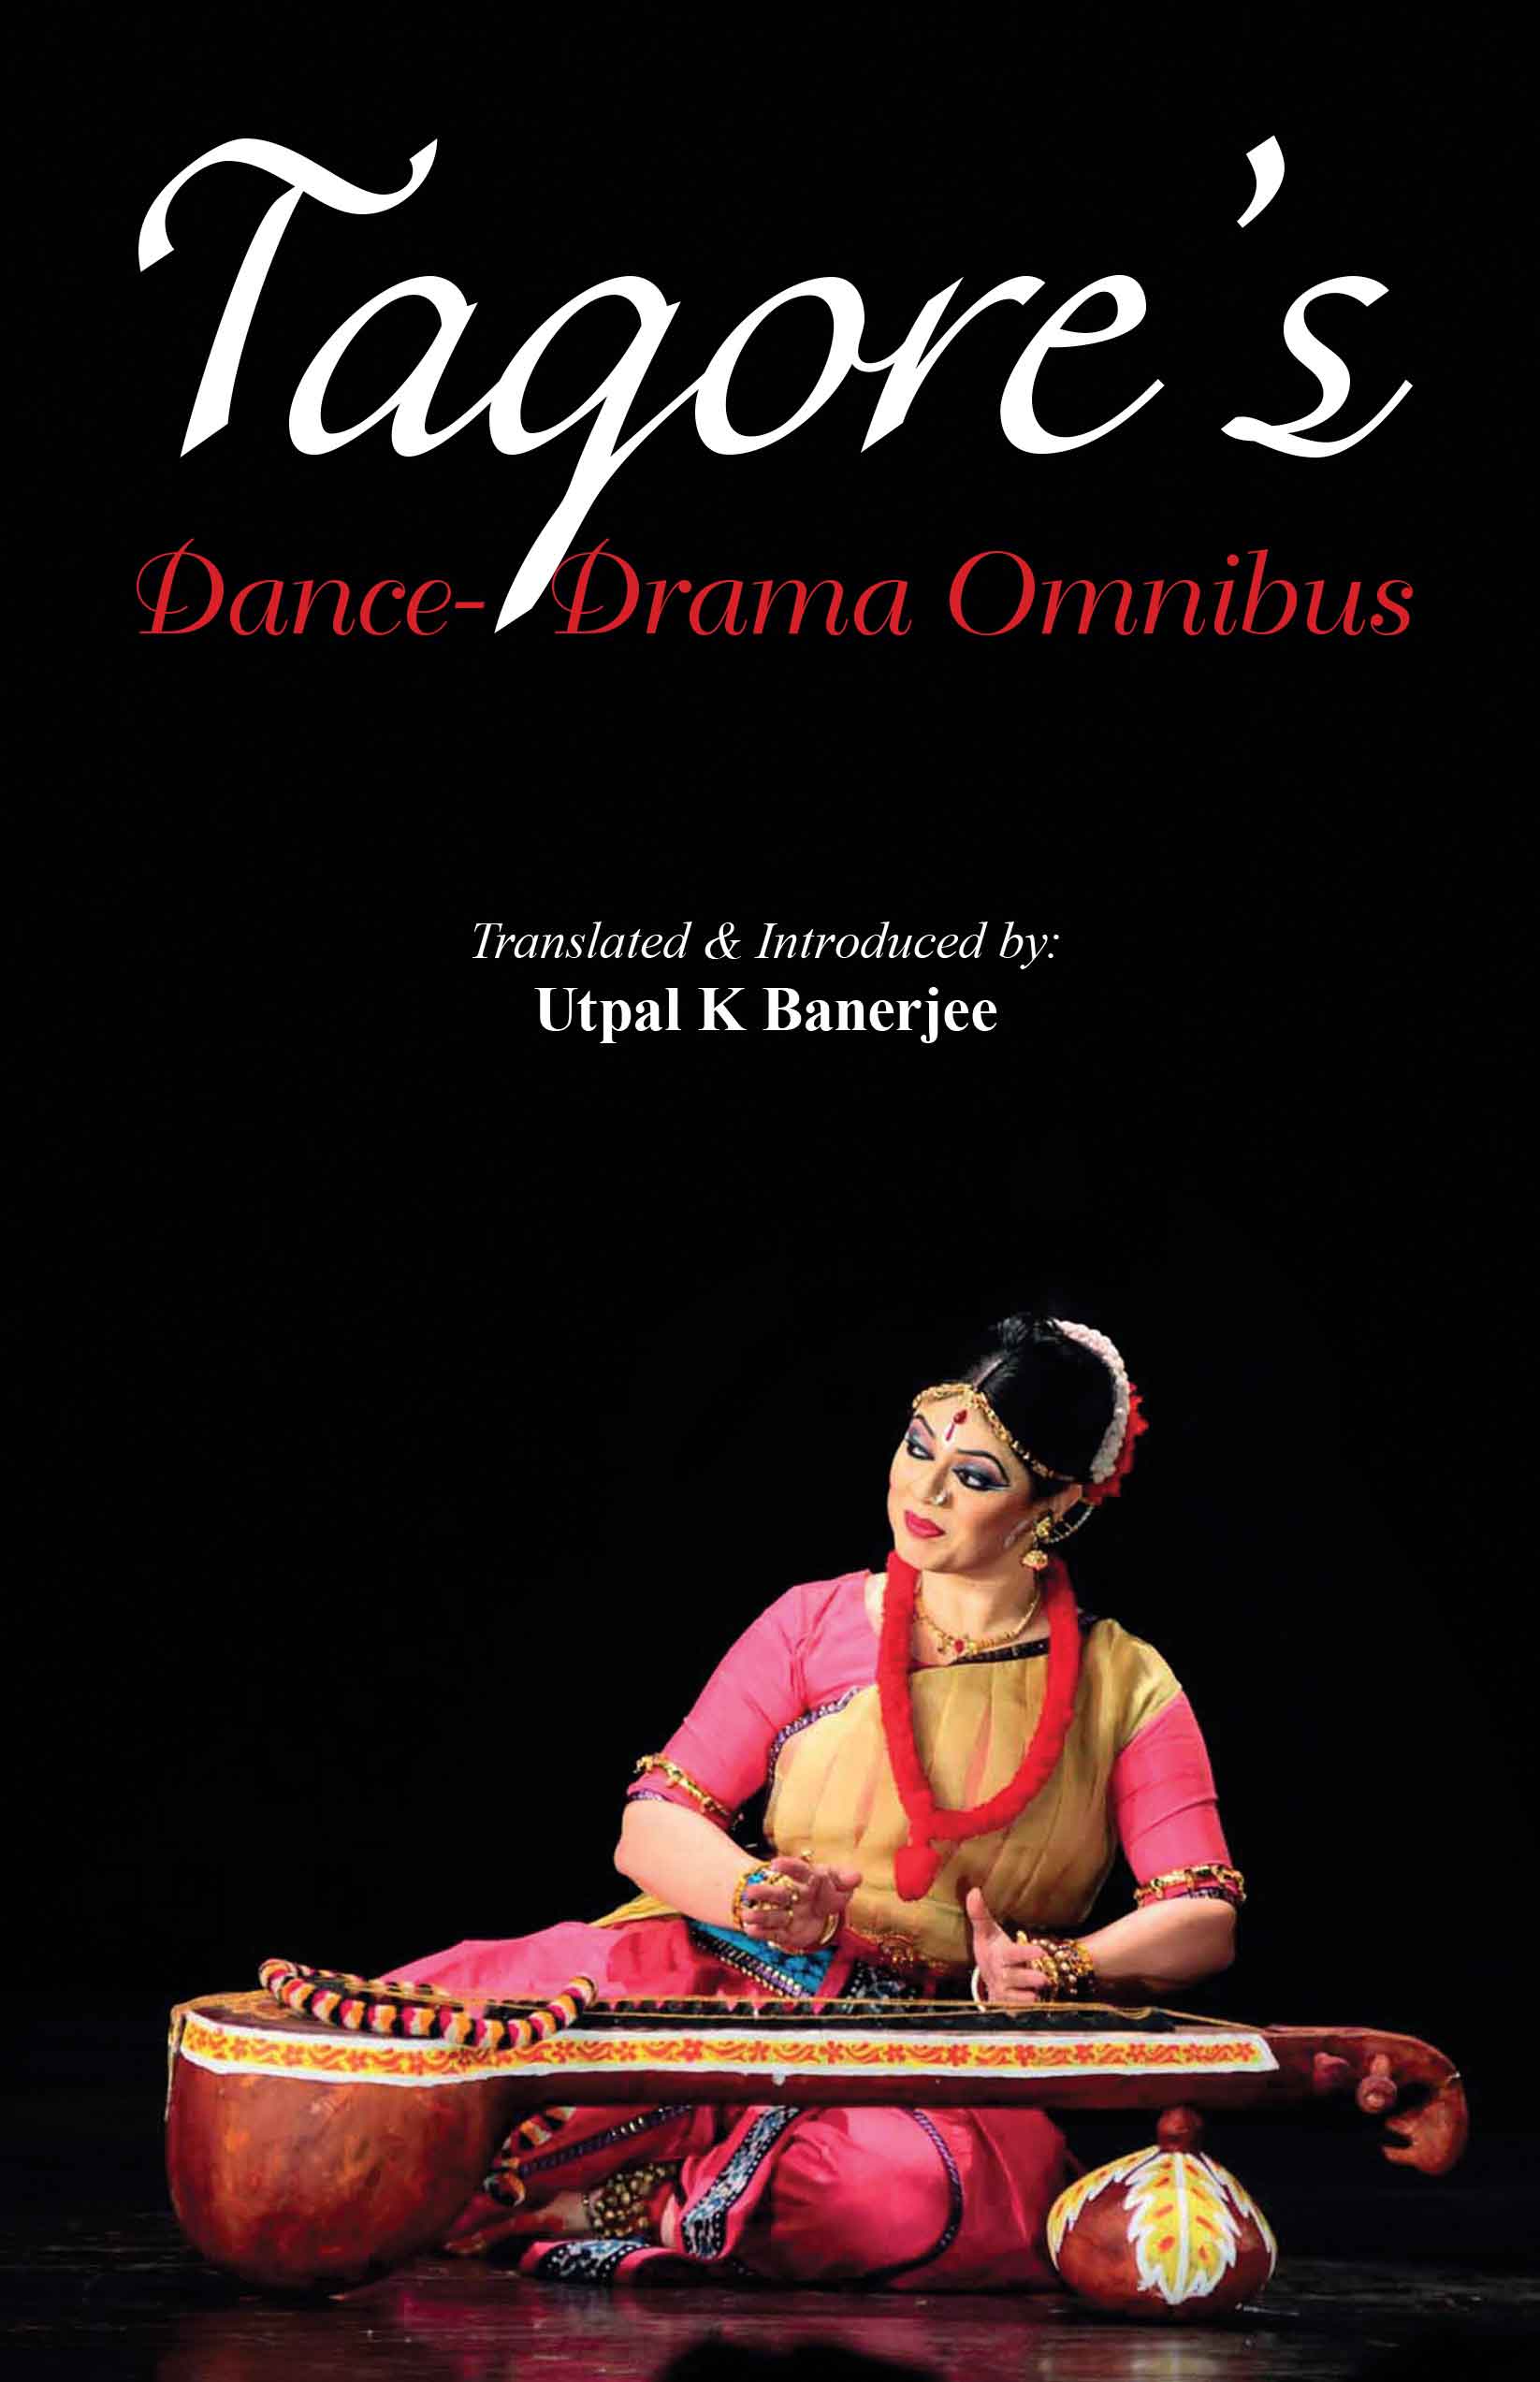 Tagores Dance Drama Omnibus WEB